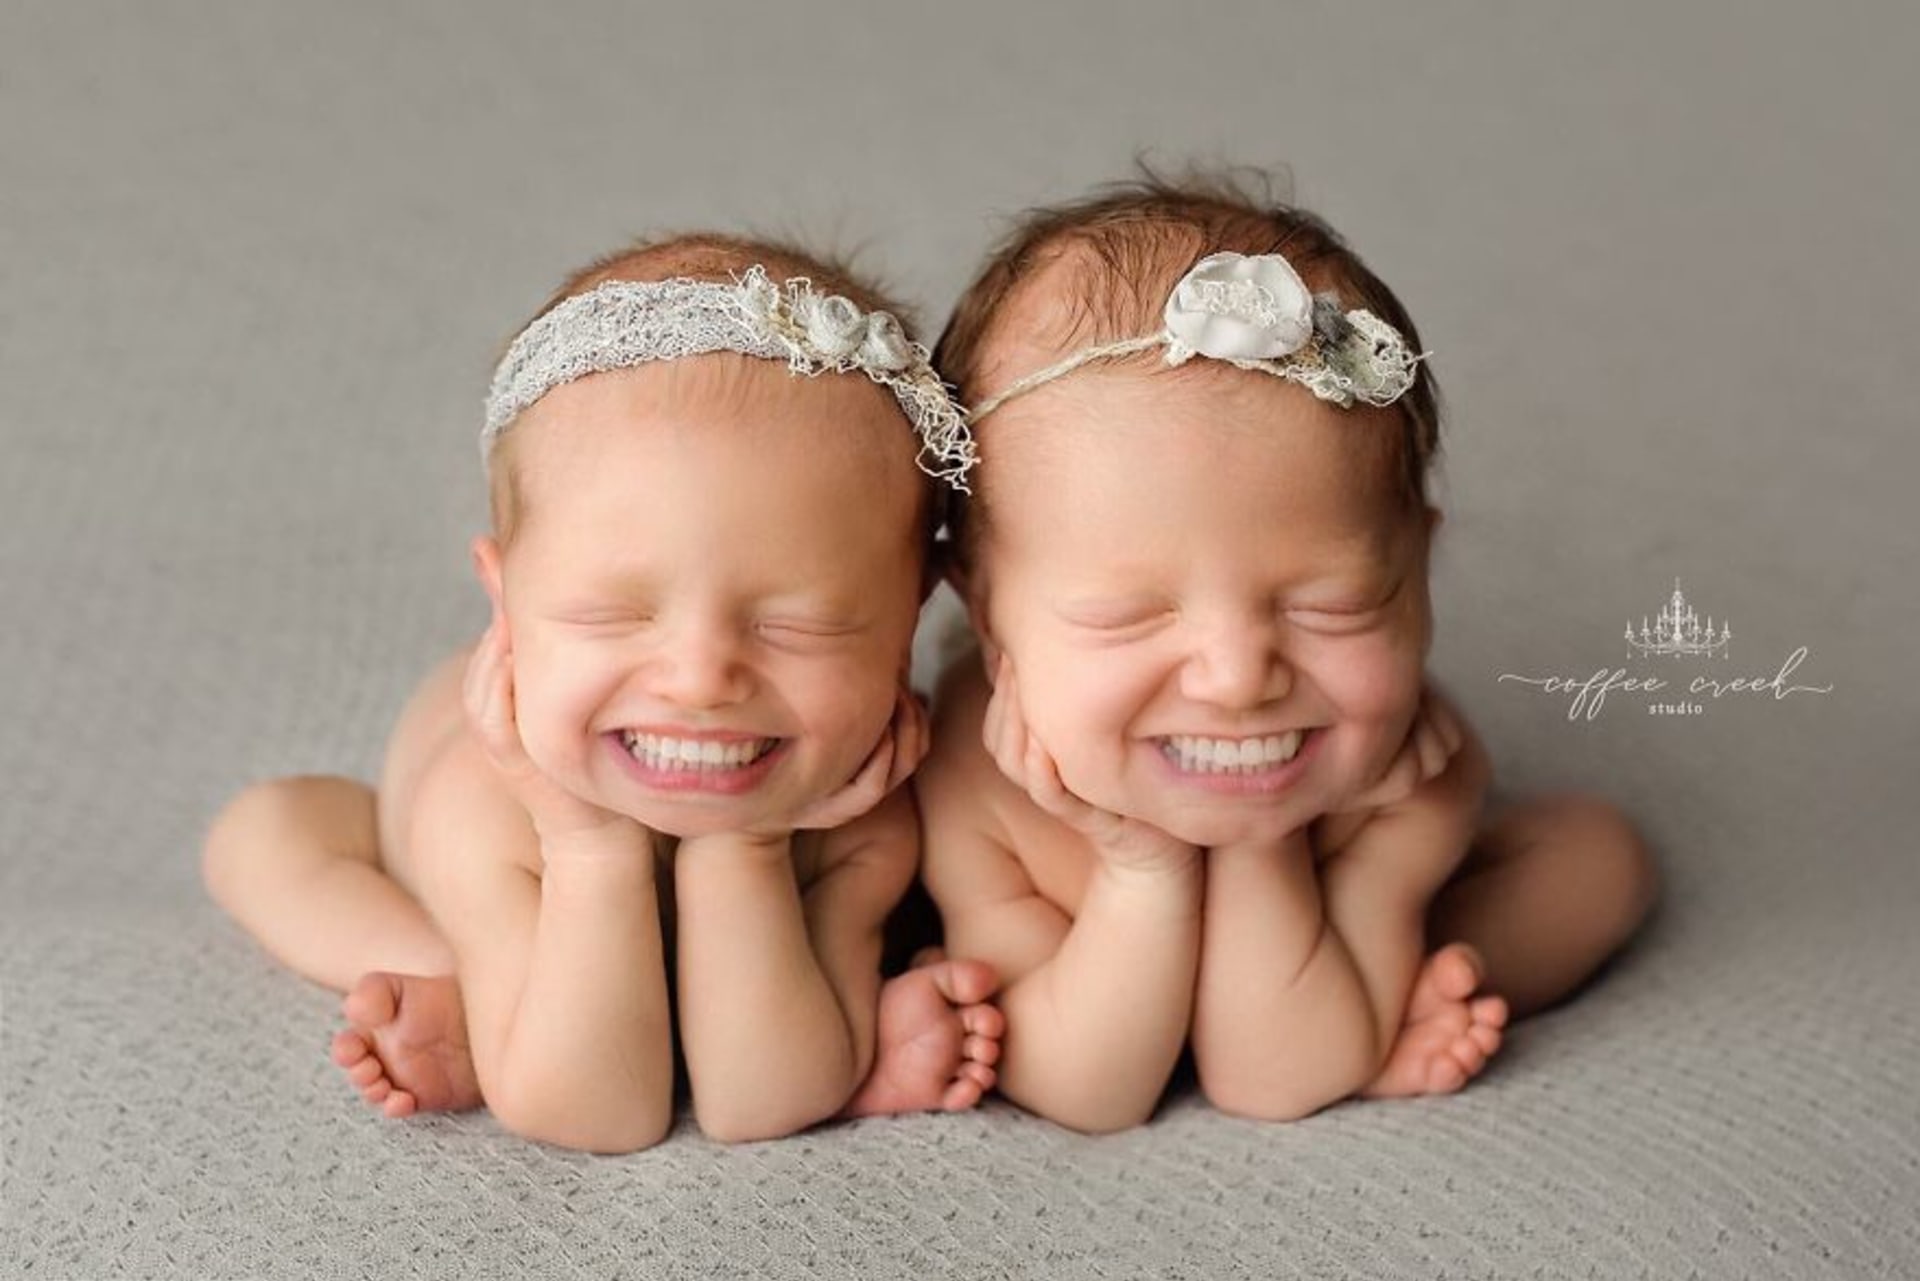 Fotky novorozenců se zuby děsí celý internet 7